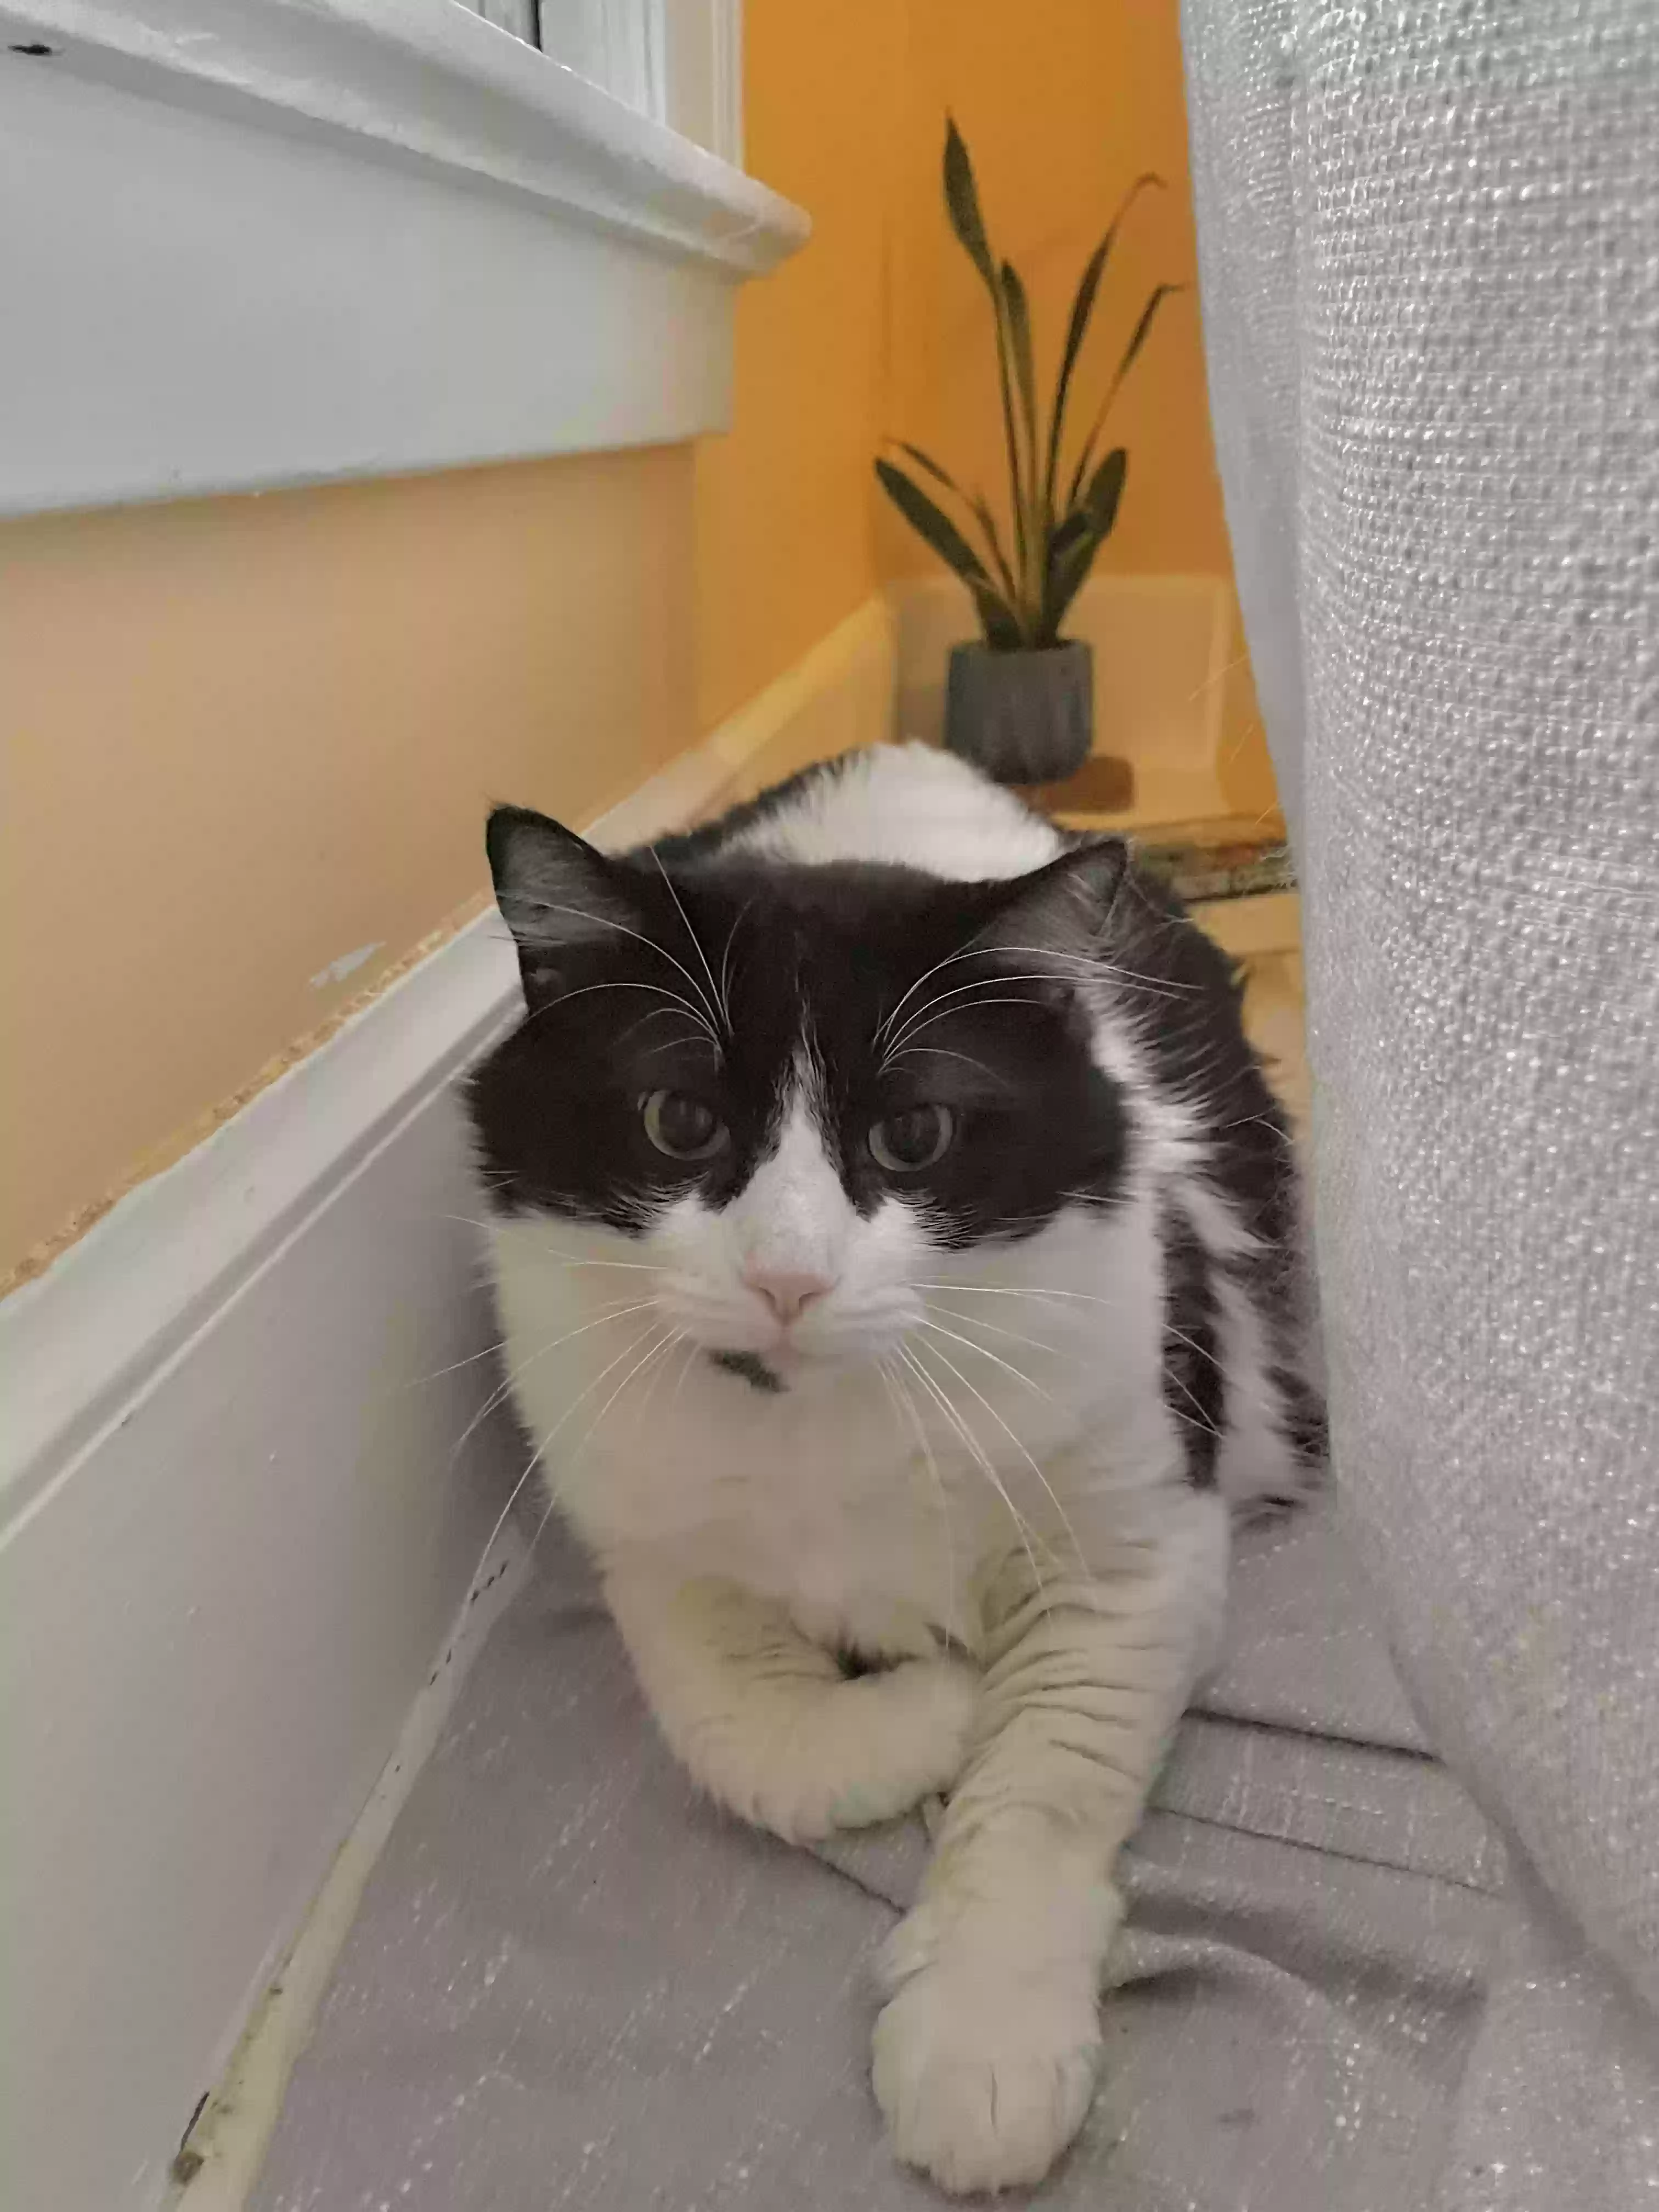 adoptable Cat in Norwich,CT named Zamora aka Mora